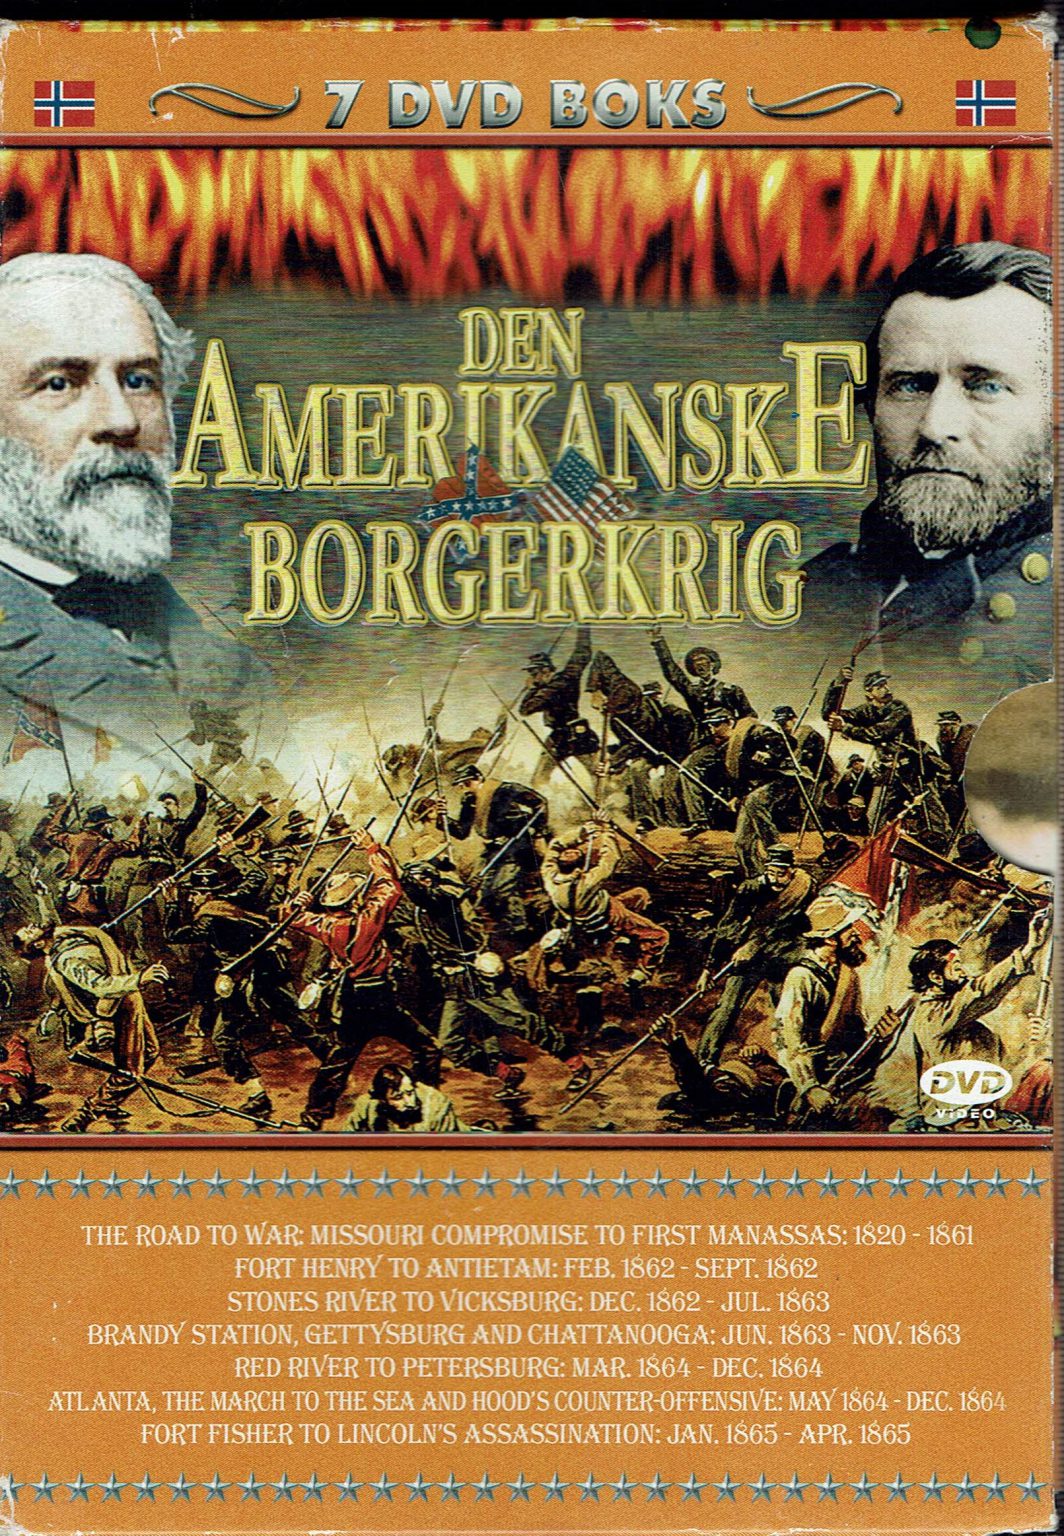 Den Amerikanske borgerkrig – DVD boks | Galleri & Gallera